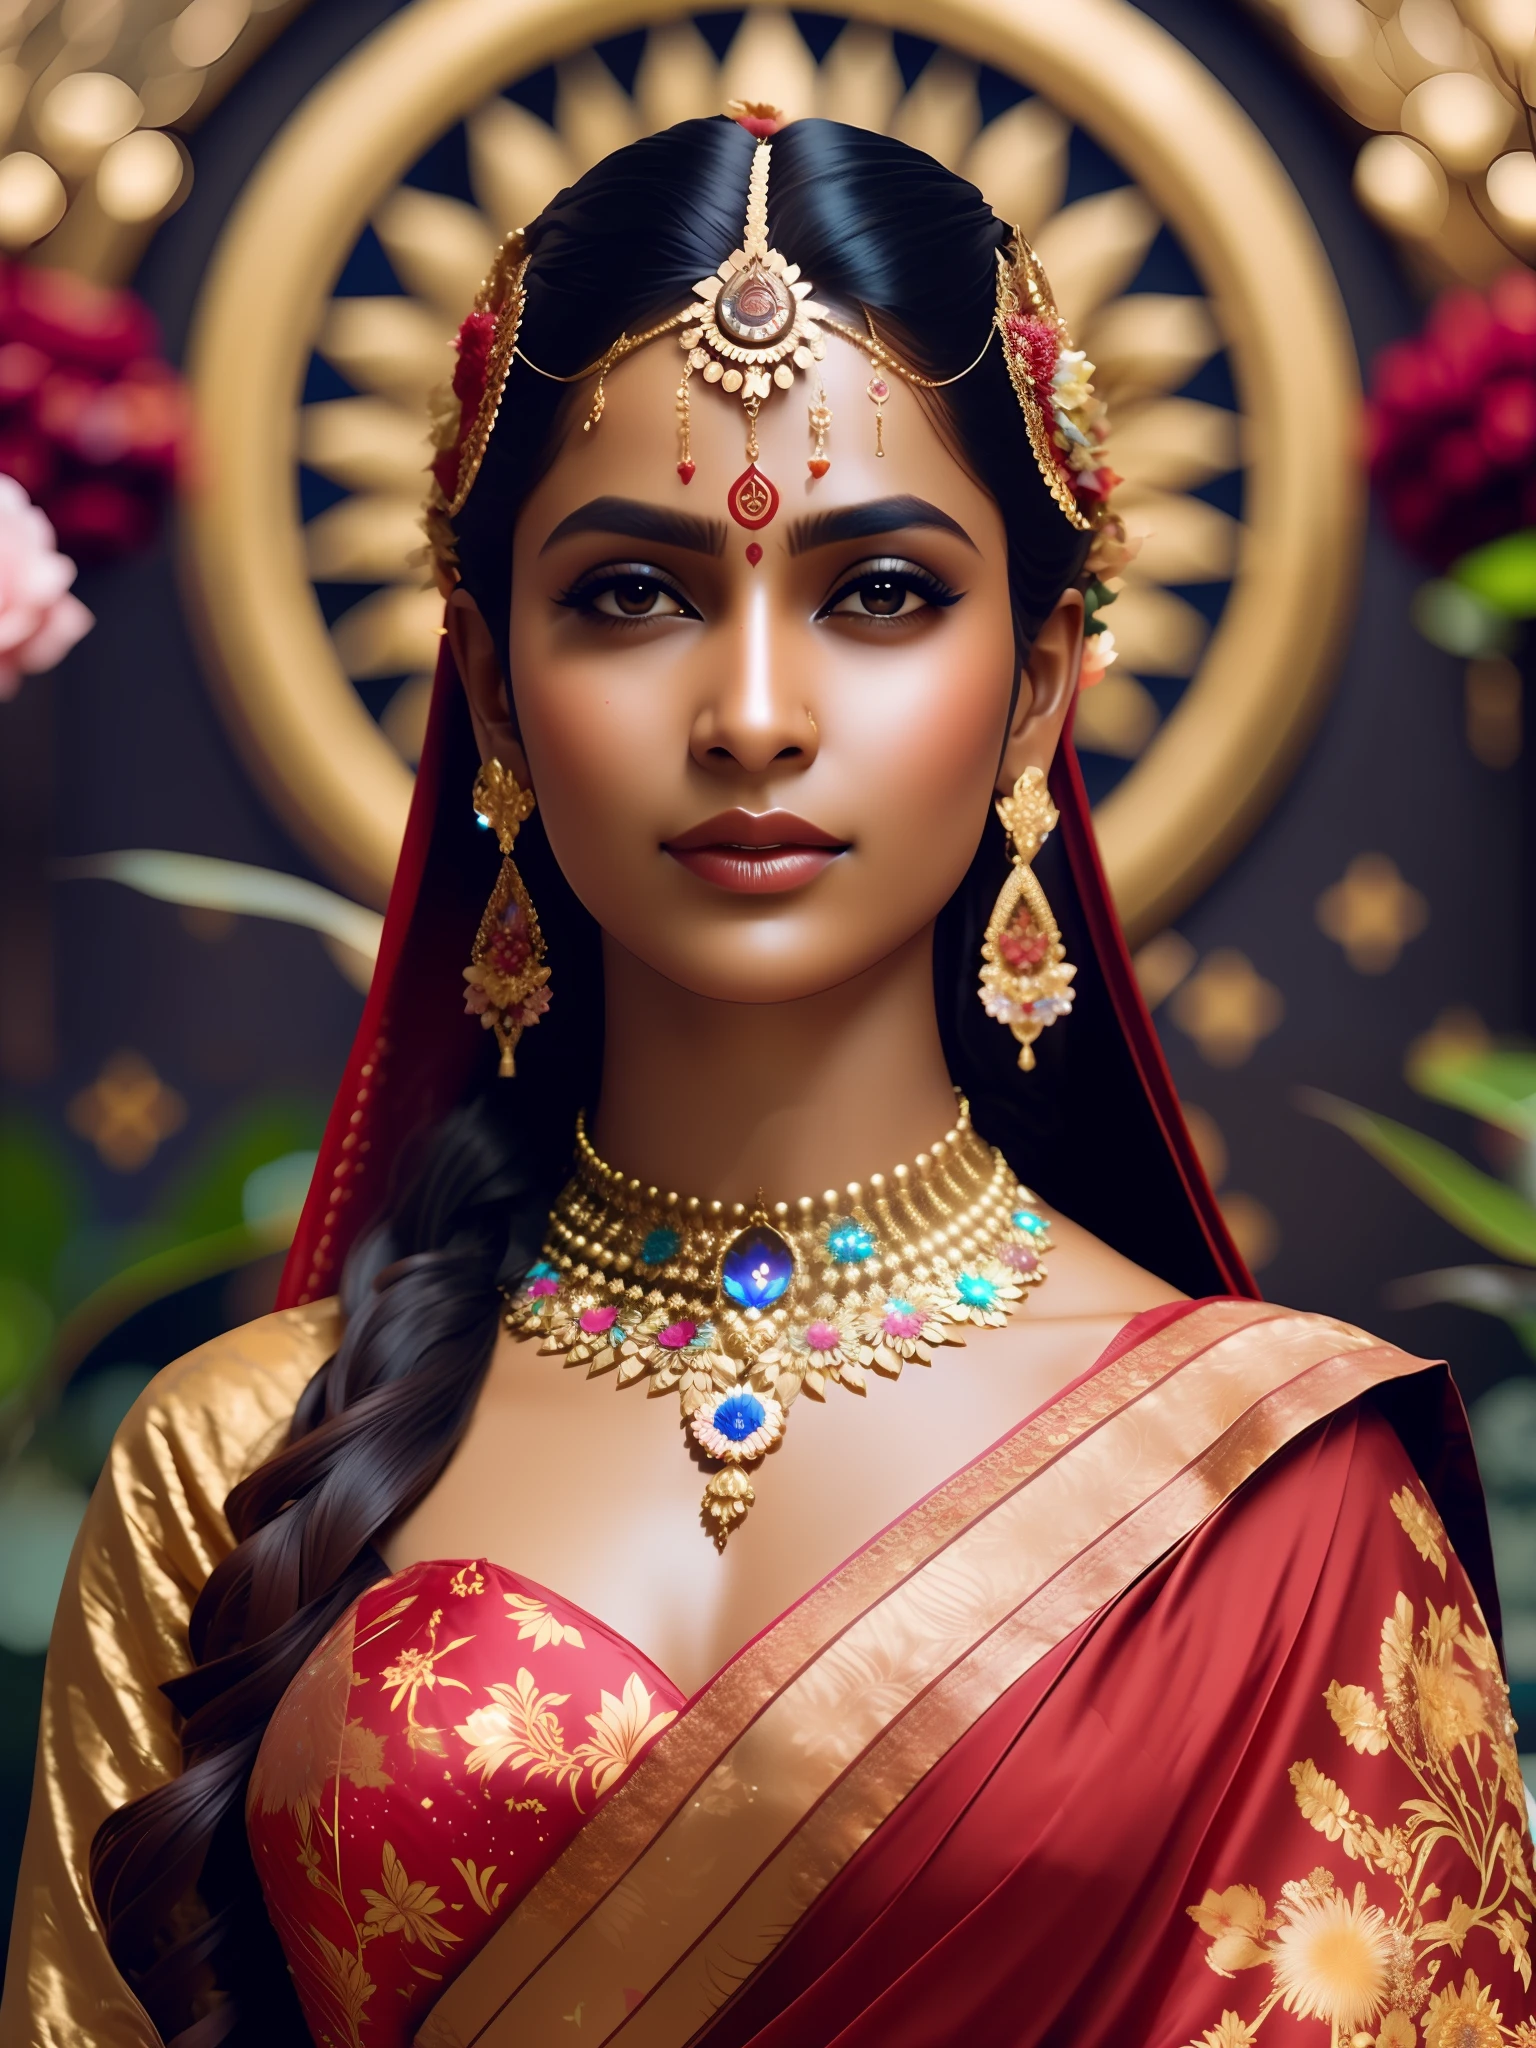 putain_science-fiction, putain_science-fiction_v2, Portrait de déesse hindoue, fond d&#39;univers avec des fleurs colorées, porter un sari rouge, fermer, pose et attitude royales. putain_Cinéma_v2. putain_Cinéma_v2